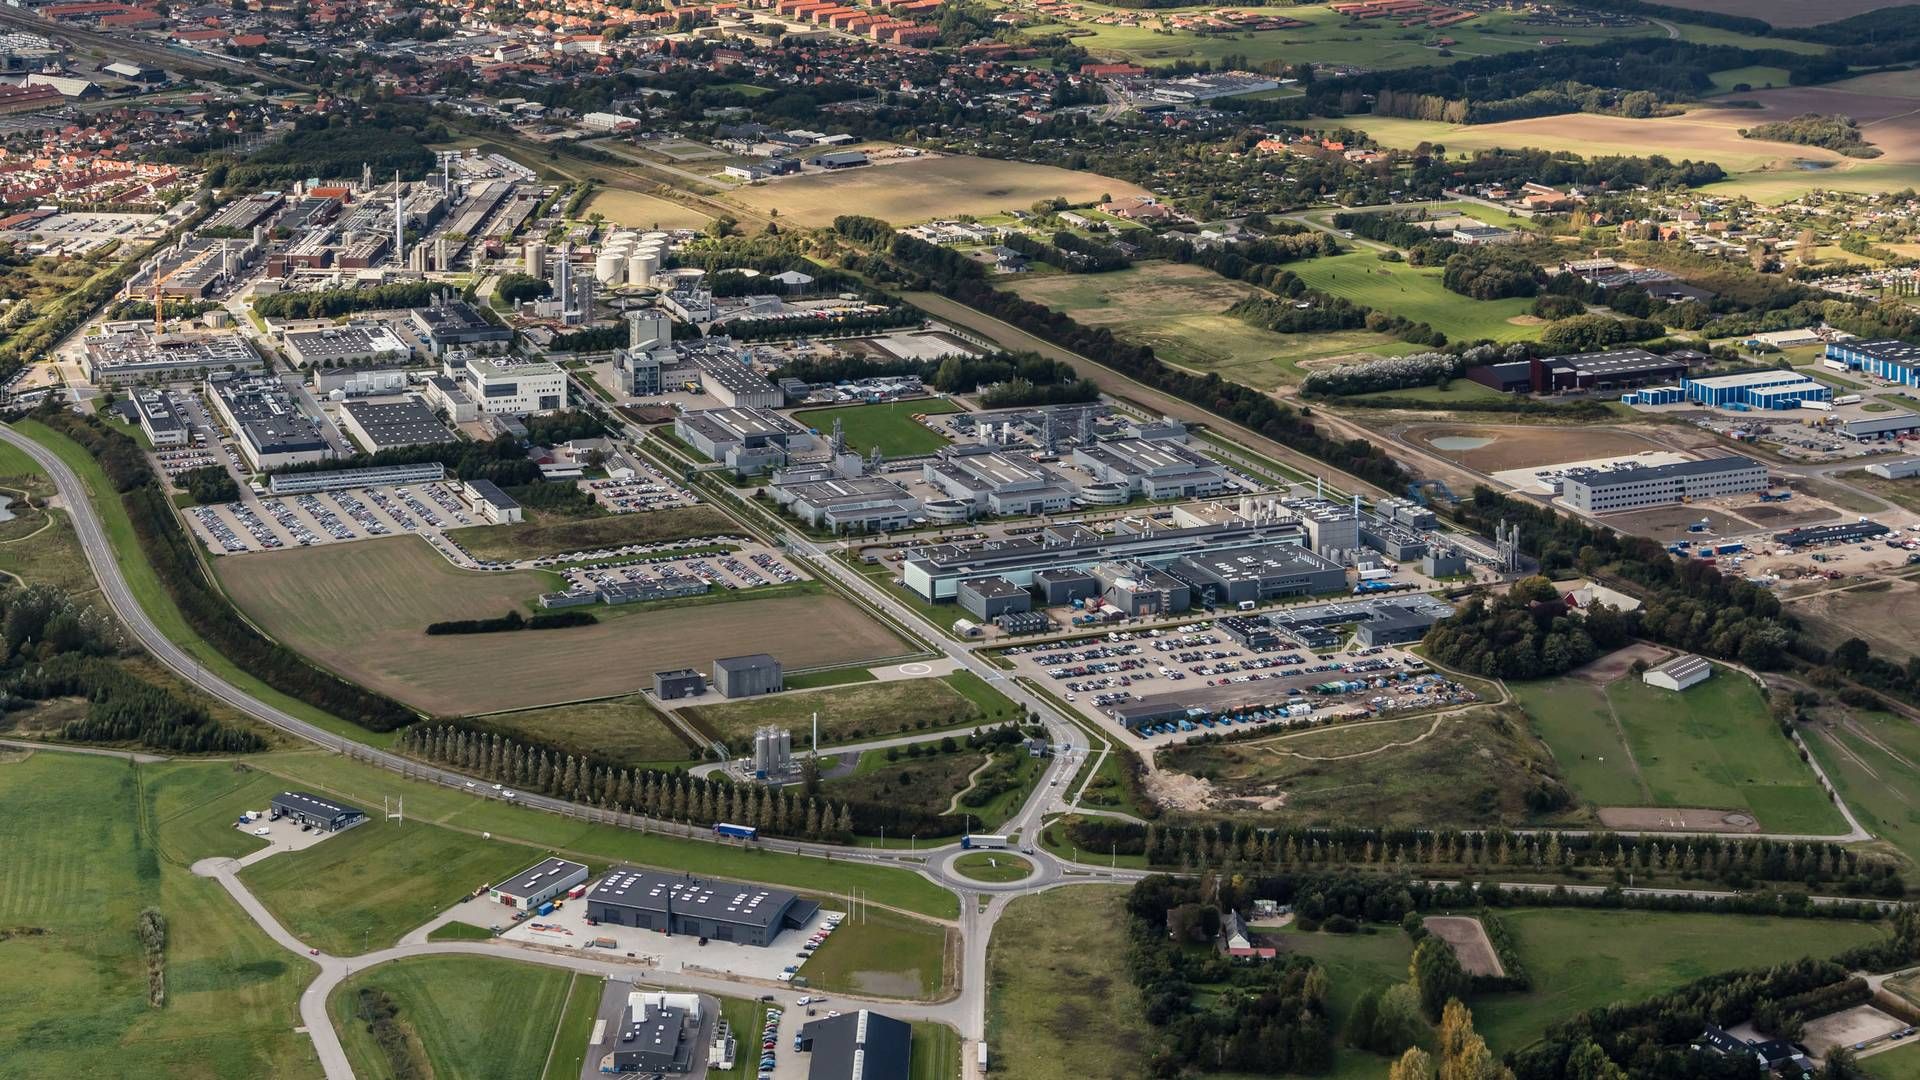 Aktuelt har Novo Nordisk ca. 4000 medarbejdere i Kalundborg, og selskabet har indtil videre investeret over 36 mia. kr. i byen frem til 2027. | Foto: PR / Novo Nordisk